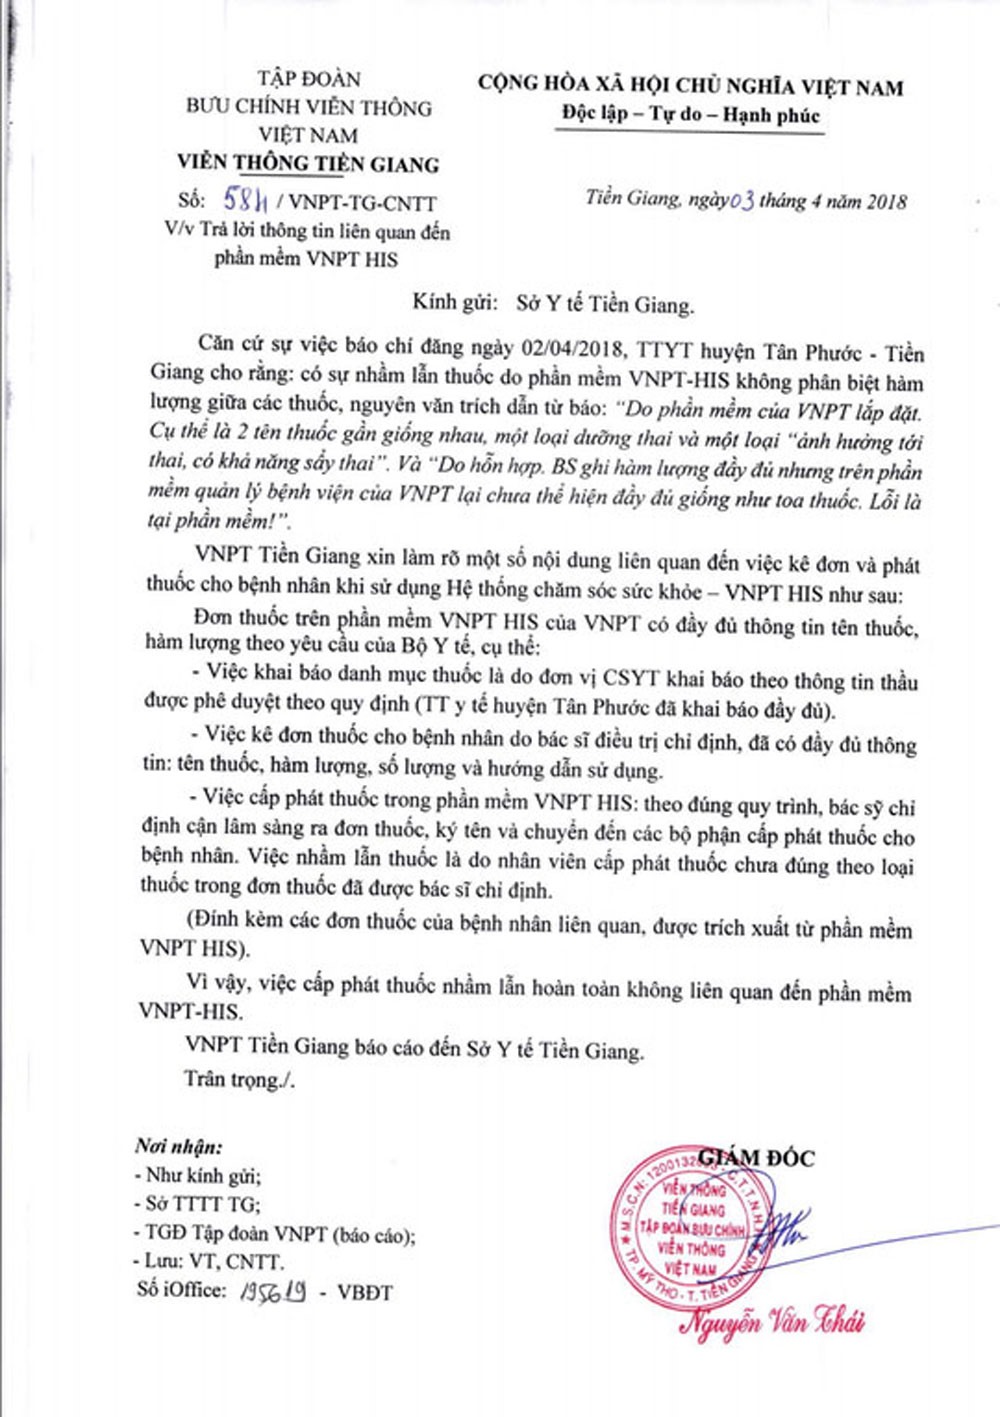 VNPT Tiền Giang khẳng định cấp nhầm thuốc không liên quan đến phần mềm VNPT.